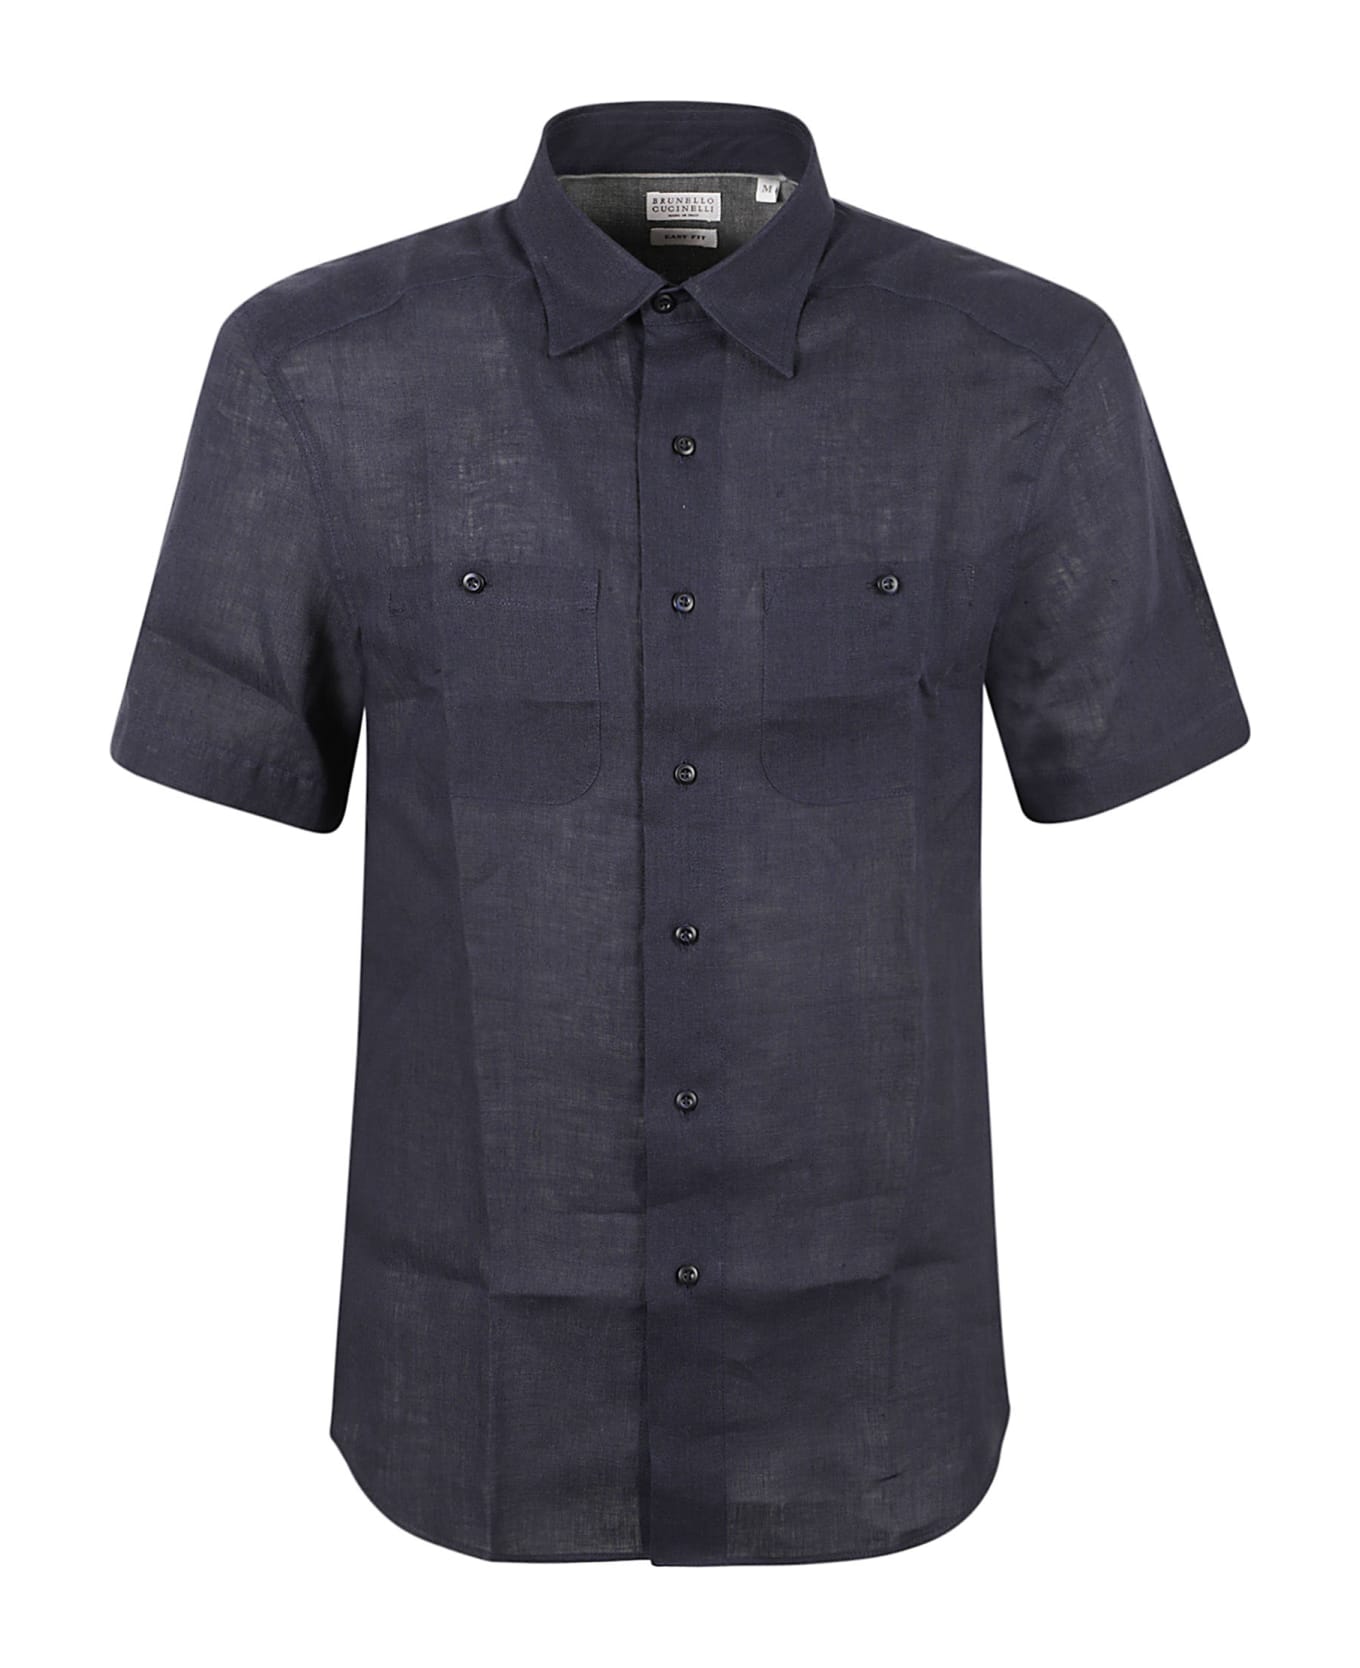 Brunello Cucinelli Round Hem Patched Pocket Plain Shirt - Navy シャツ